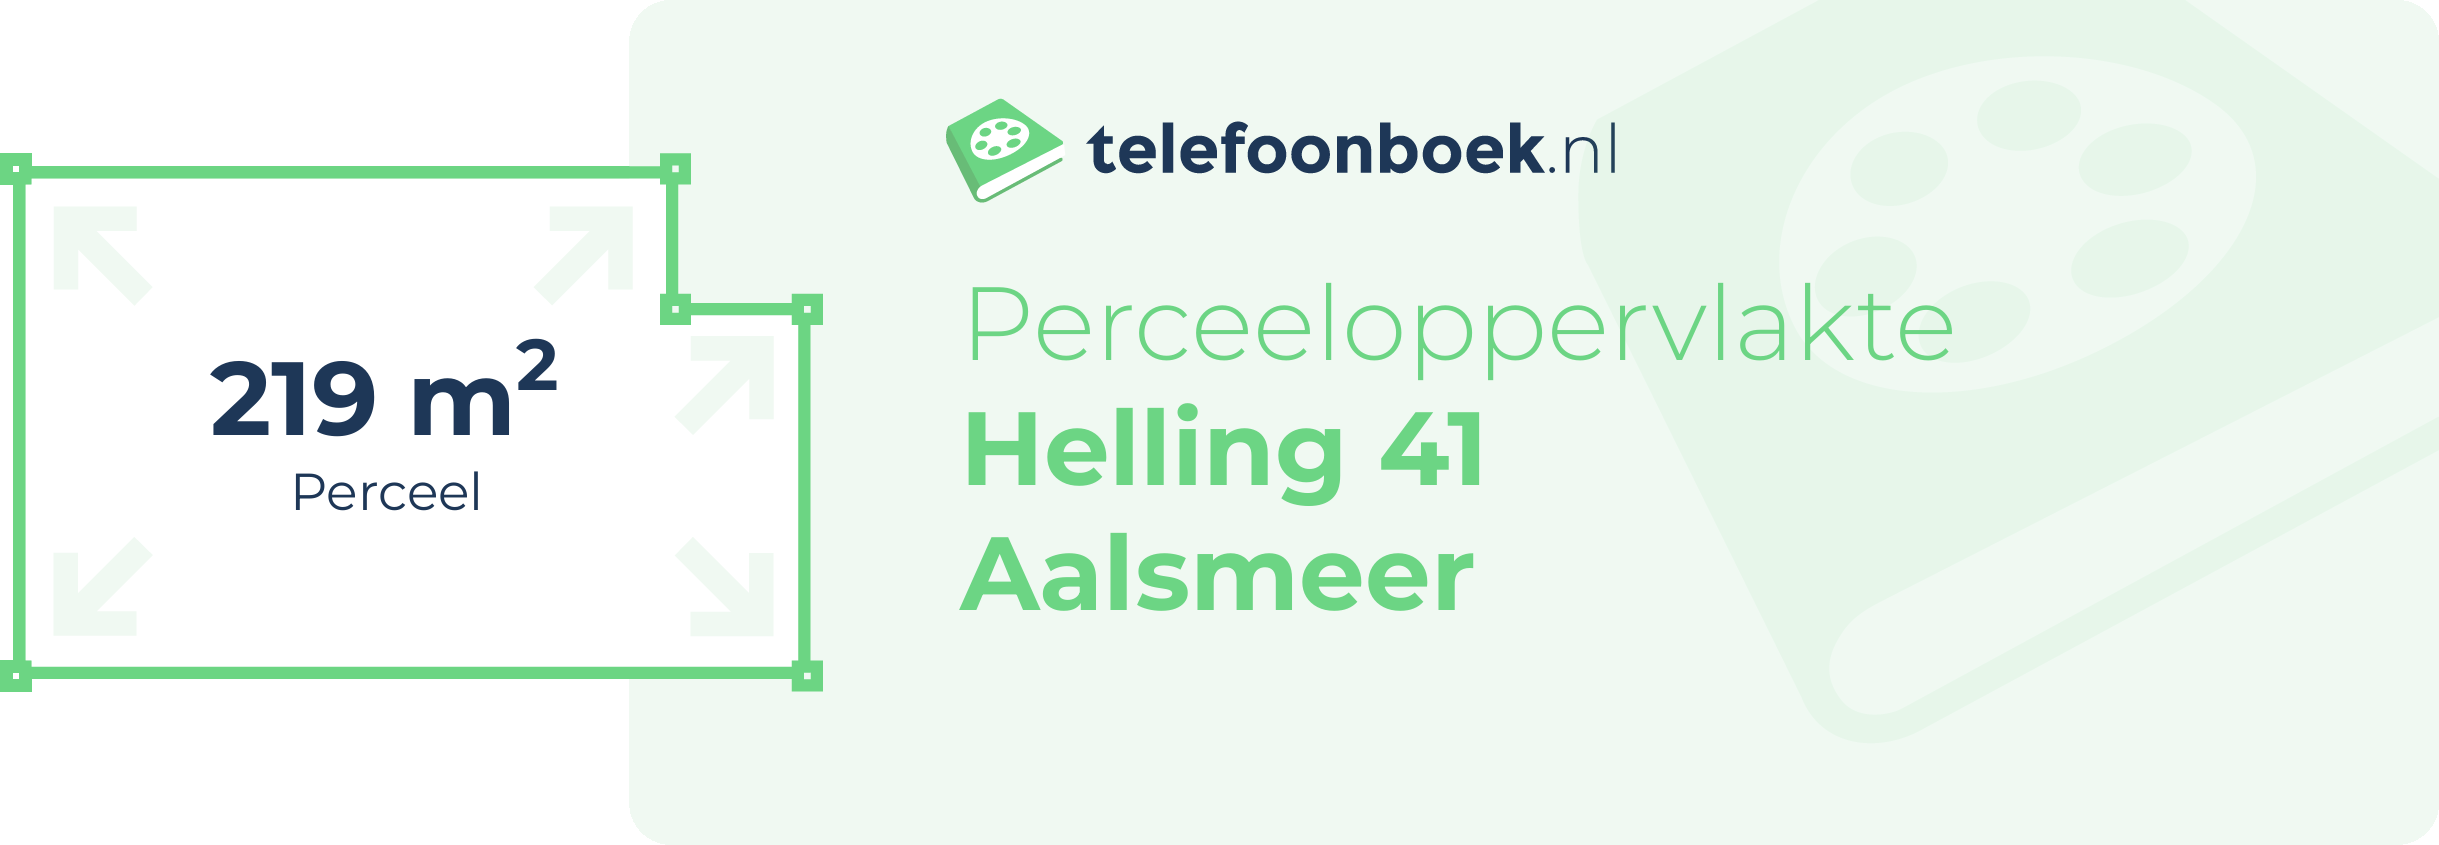 Perceeloppervlakte Helling 41 Aalsmeer